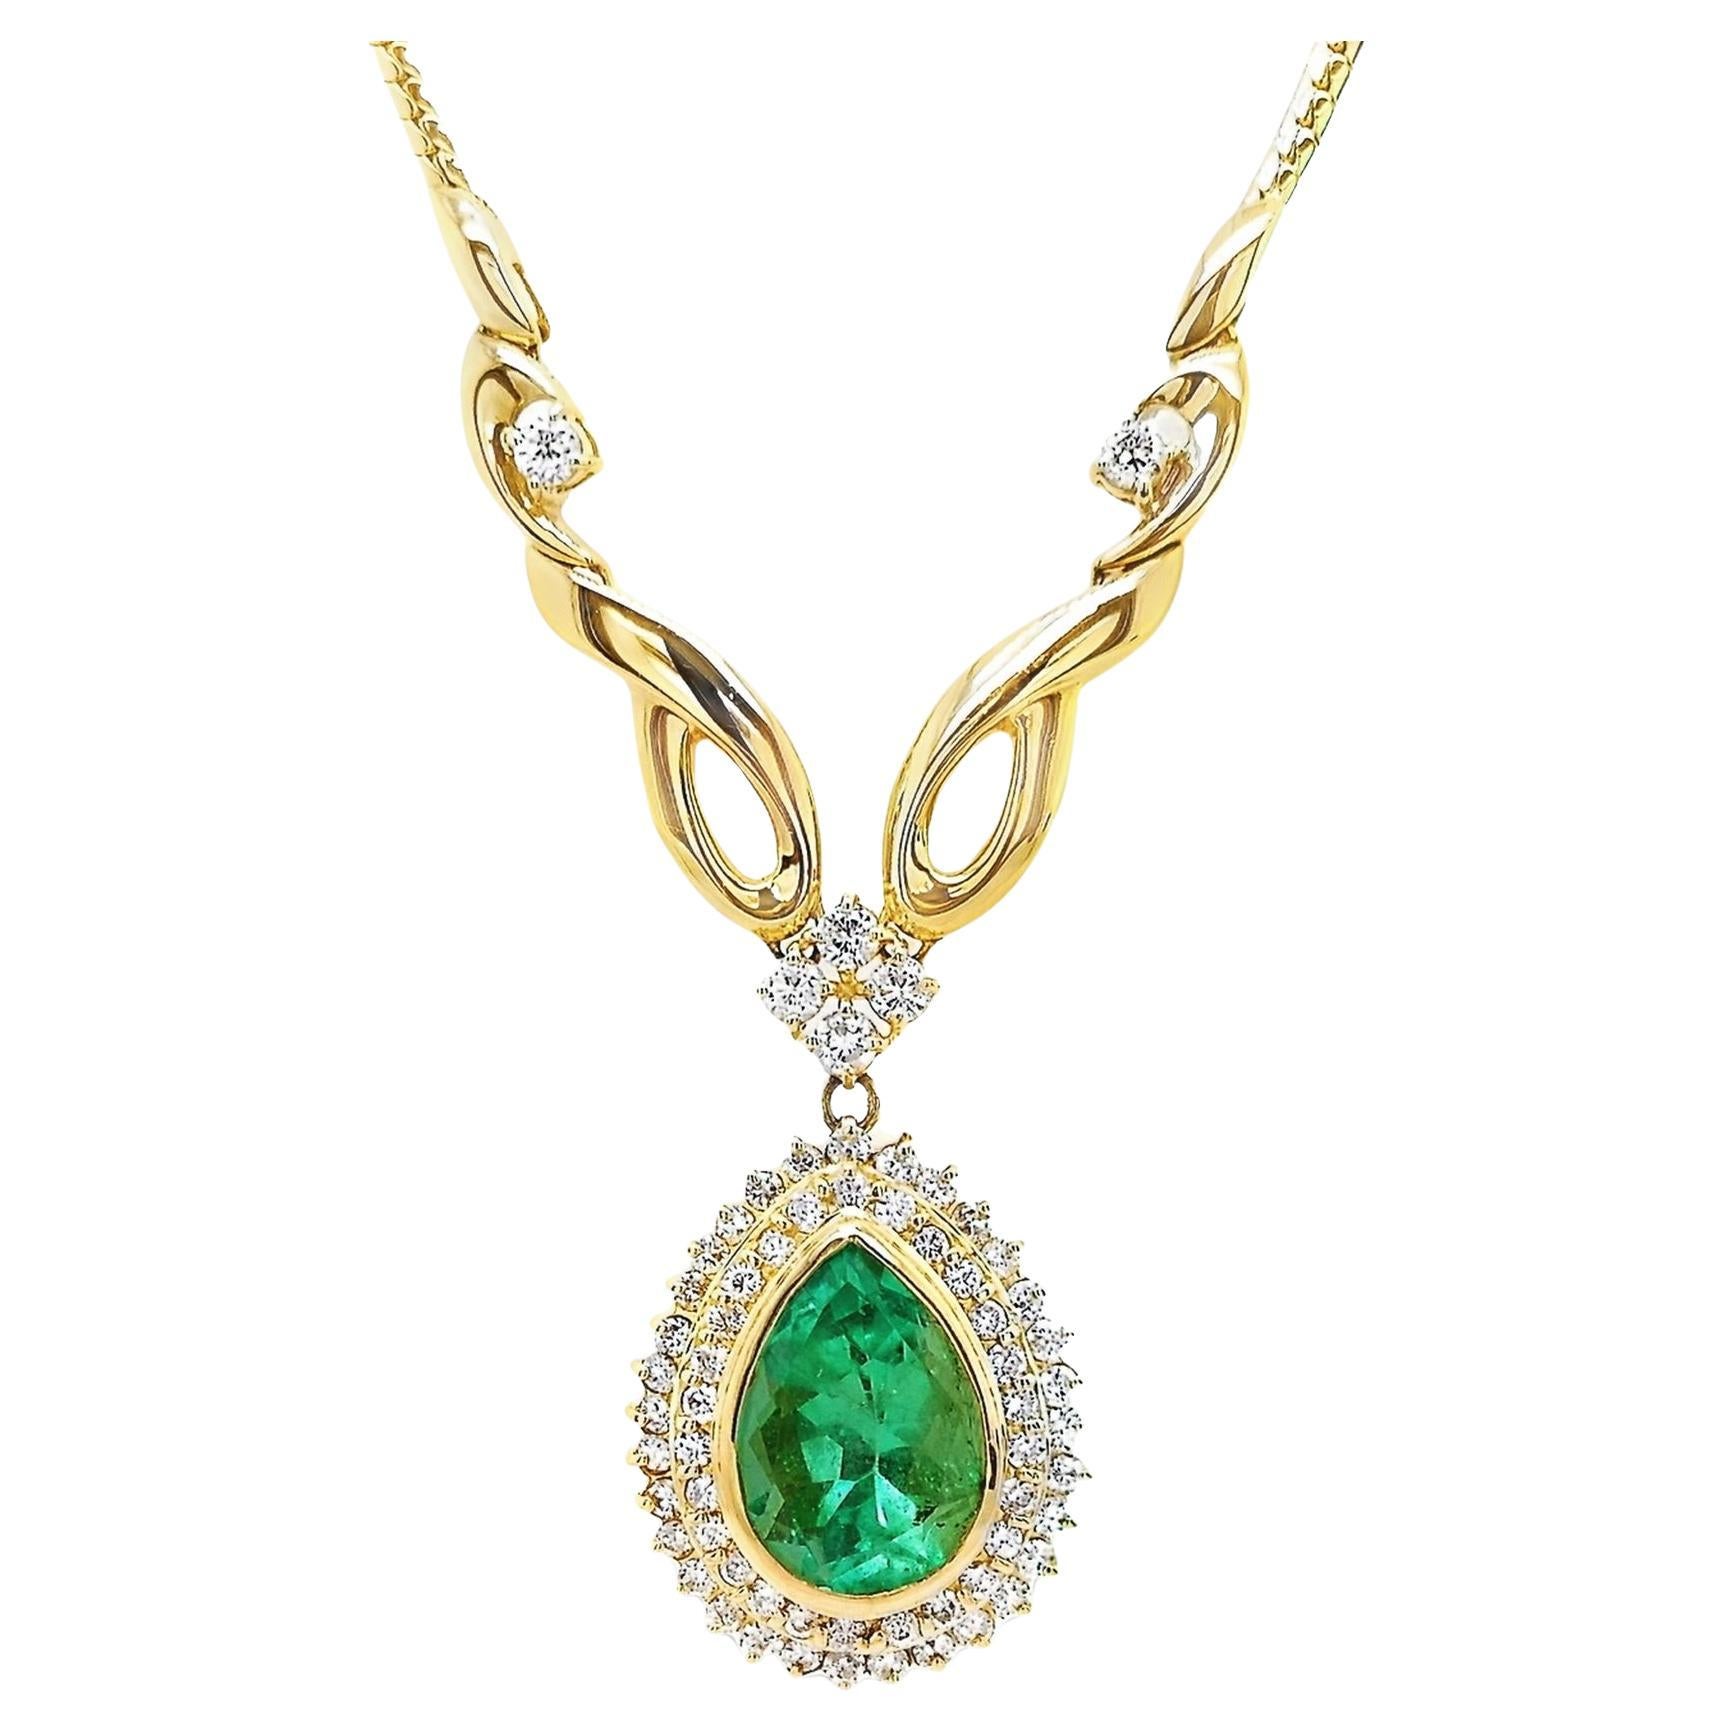 IGI-zertifizierte Halskette aus 18 Karat Gelbgold mit 5,14 Karat kolumbianischem Smaragd und 1,46 Karat Diamanten